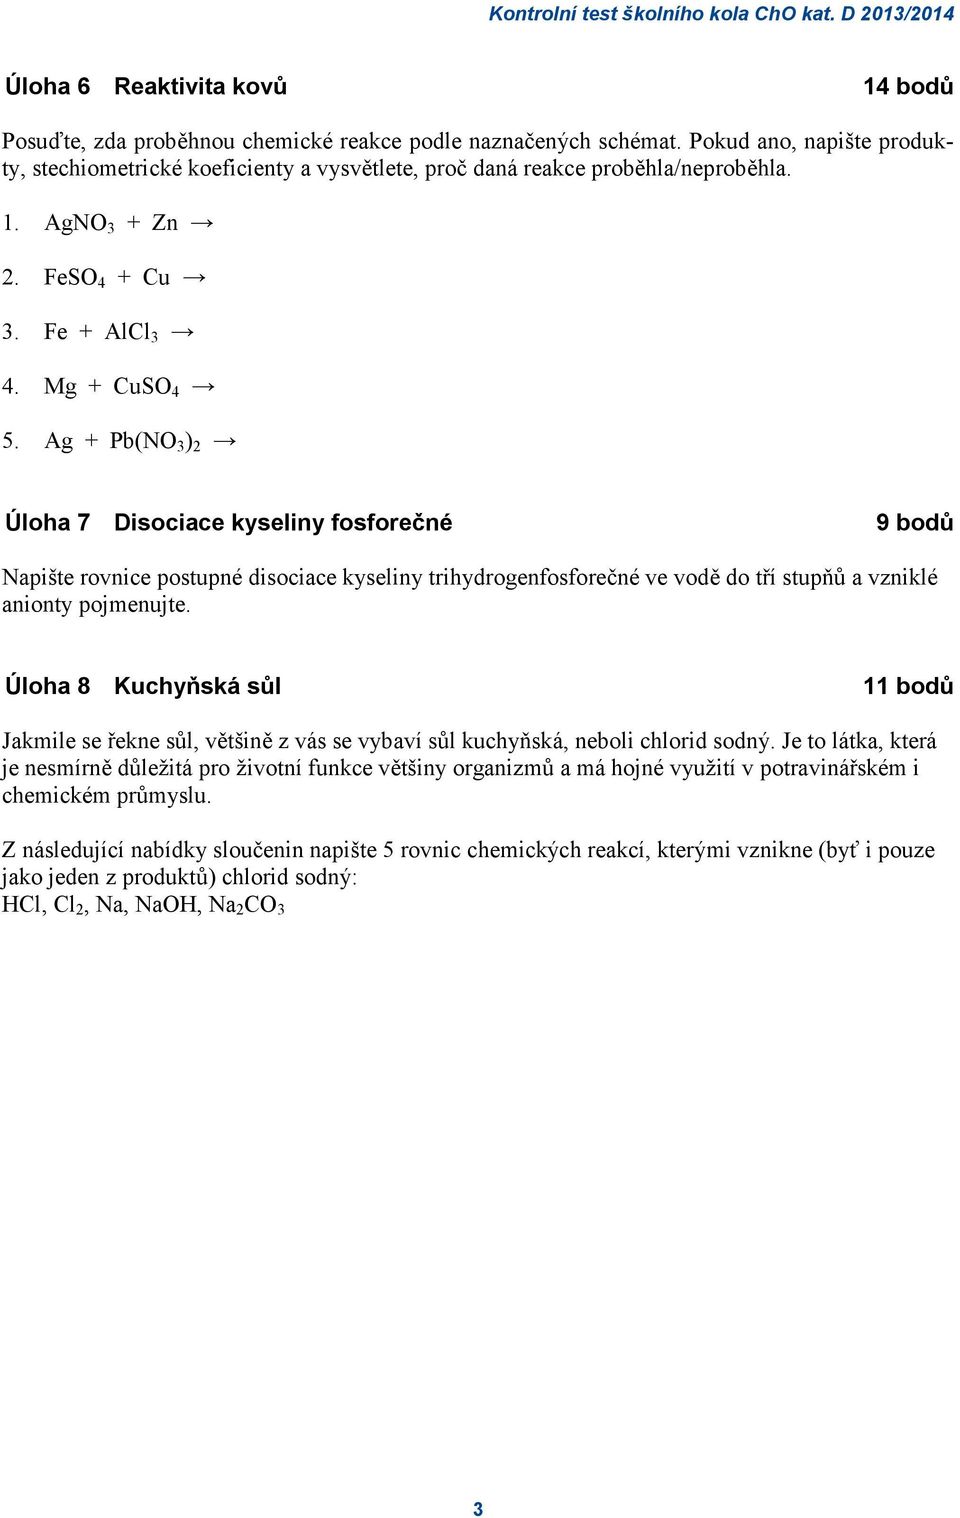 Ag + Pb(NO 3 ) 2 Úloha 7 Disociace kyseliny fosforečné 9 bodů Napište rovnice postupné disociace kyseliny trihydrogenfosforečné ve vodě do tří stupňů a vzniklé anionty pojmenujte.